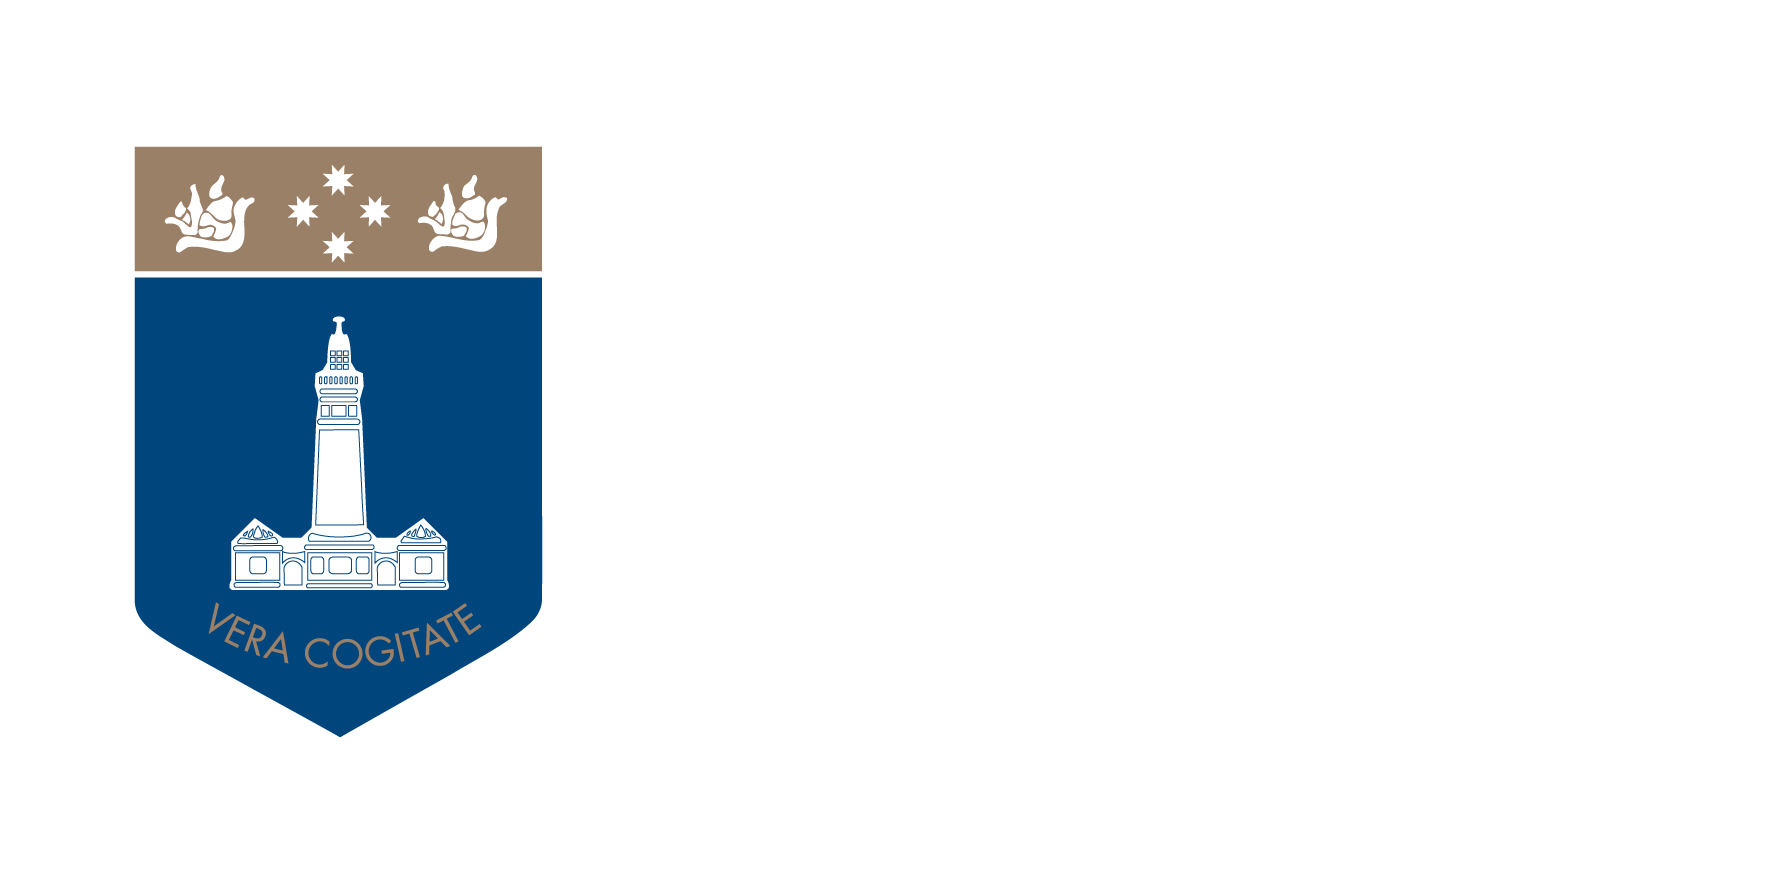 Robert Menzies College